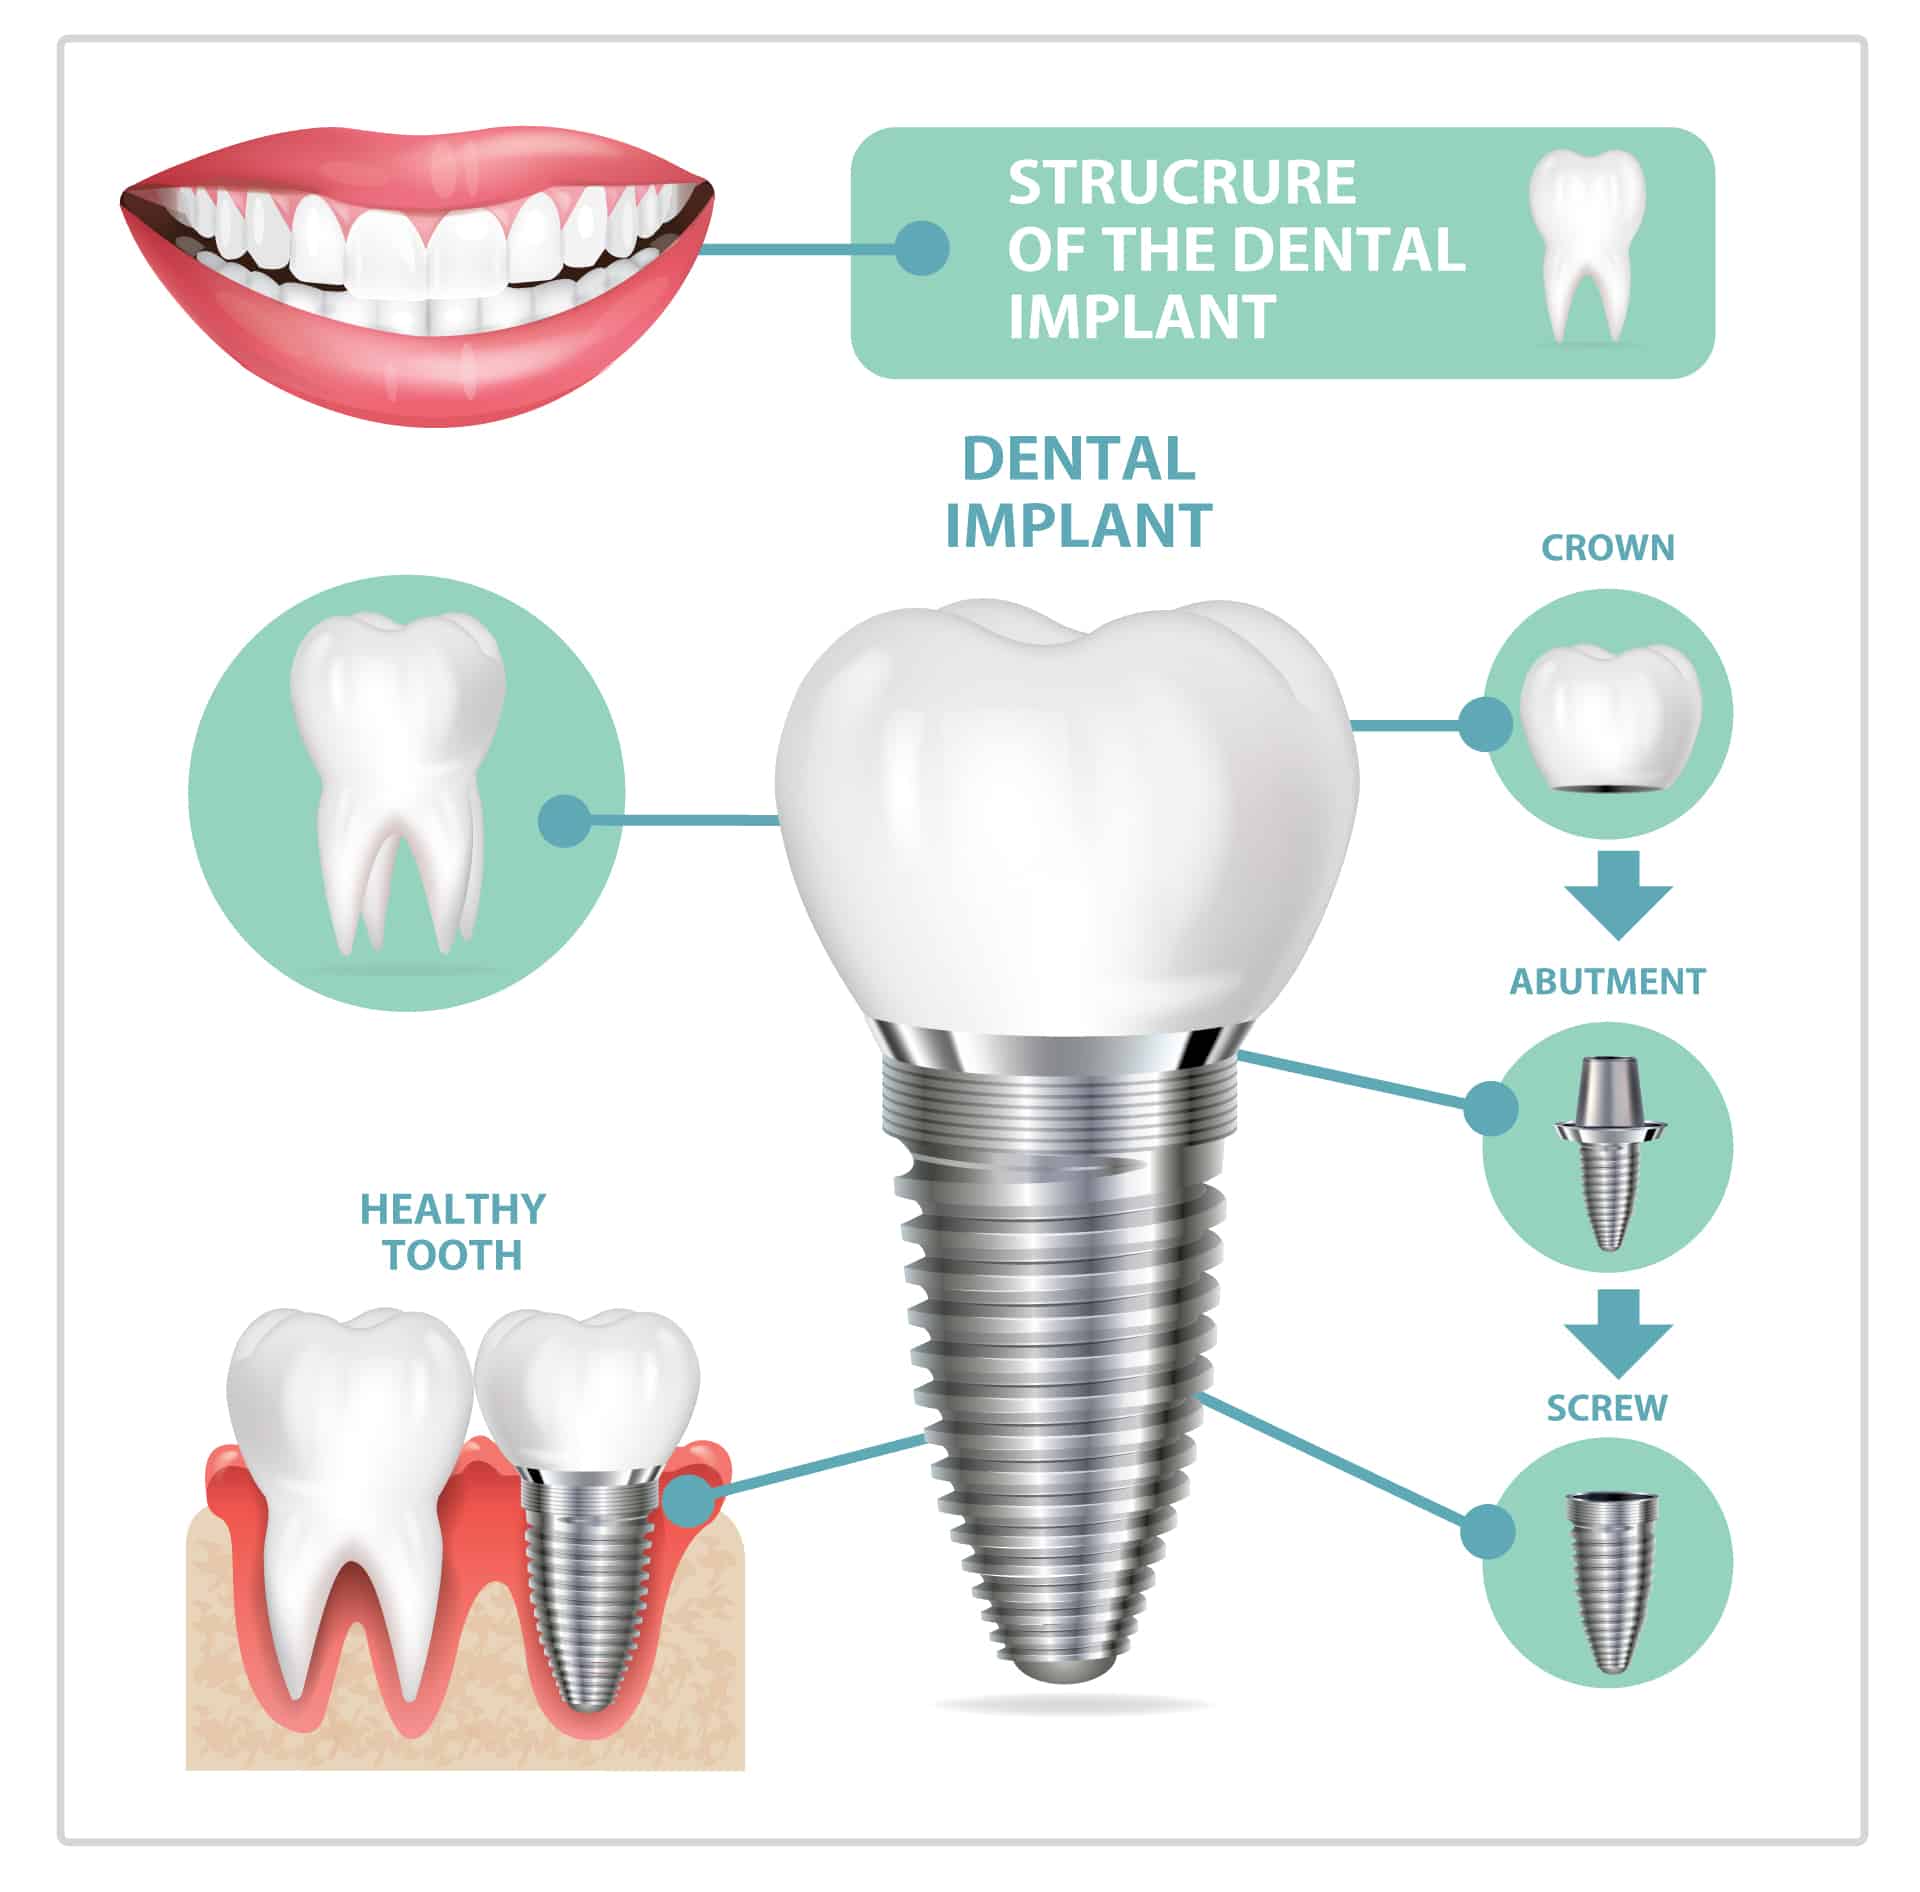 ฝังรากฟันเทียม (Dental Implant)